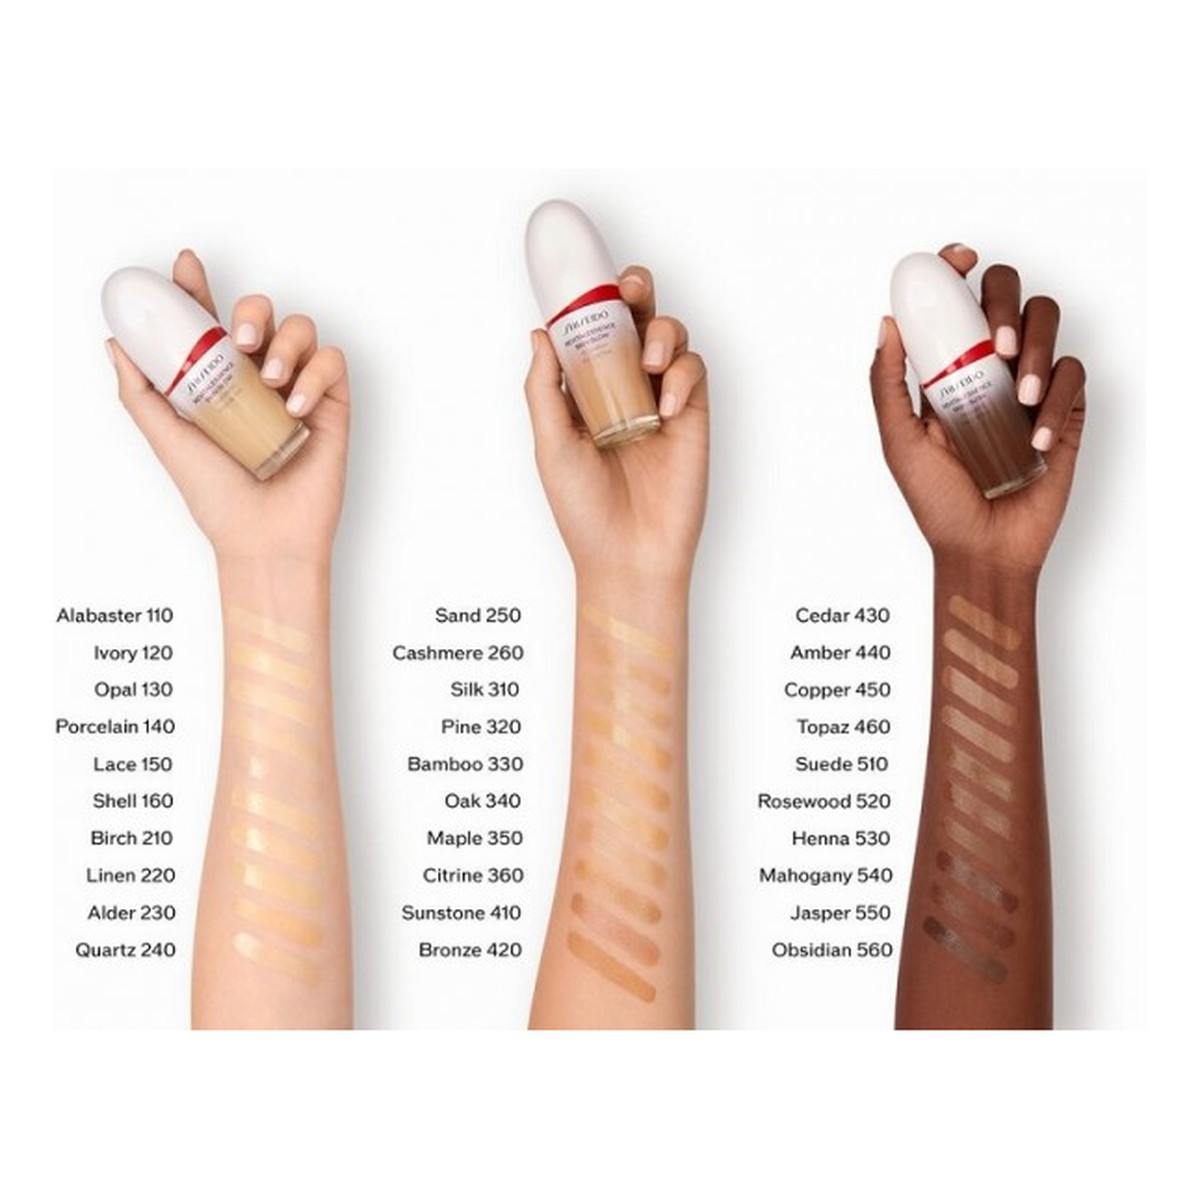 Shiseido Revitalessence Skin Glow Foundation Podkład do twarzy SPF30 30ml